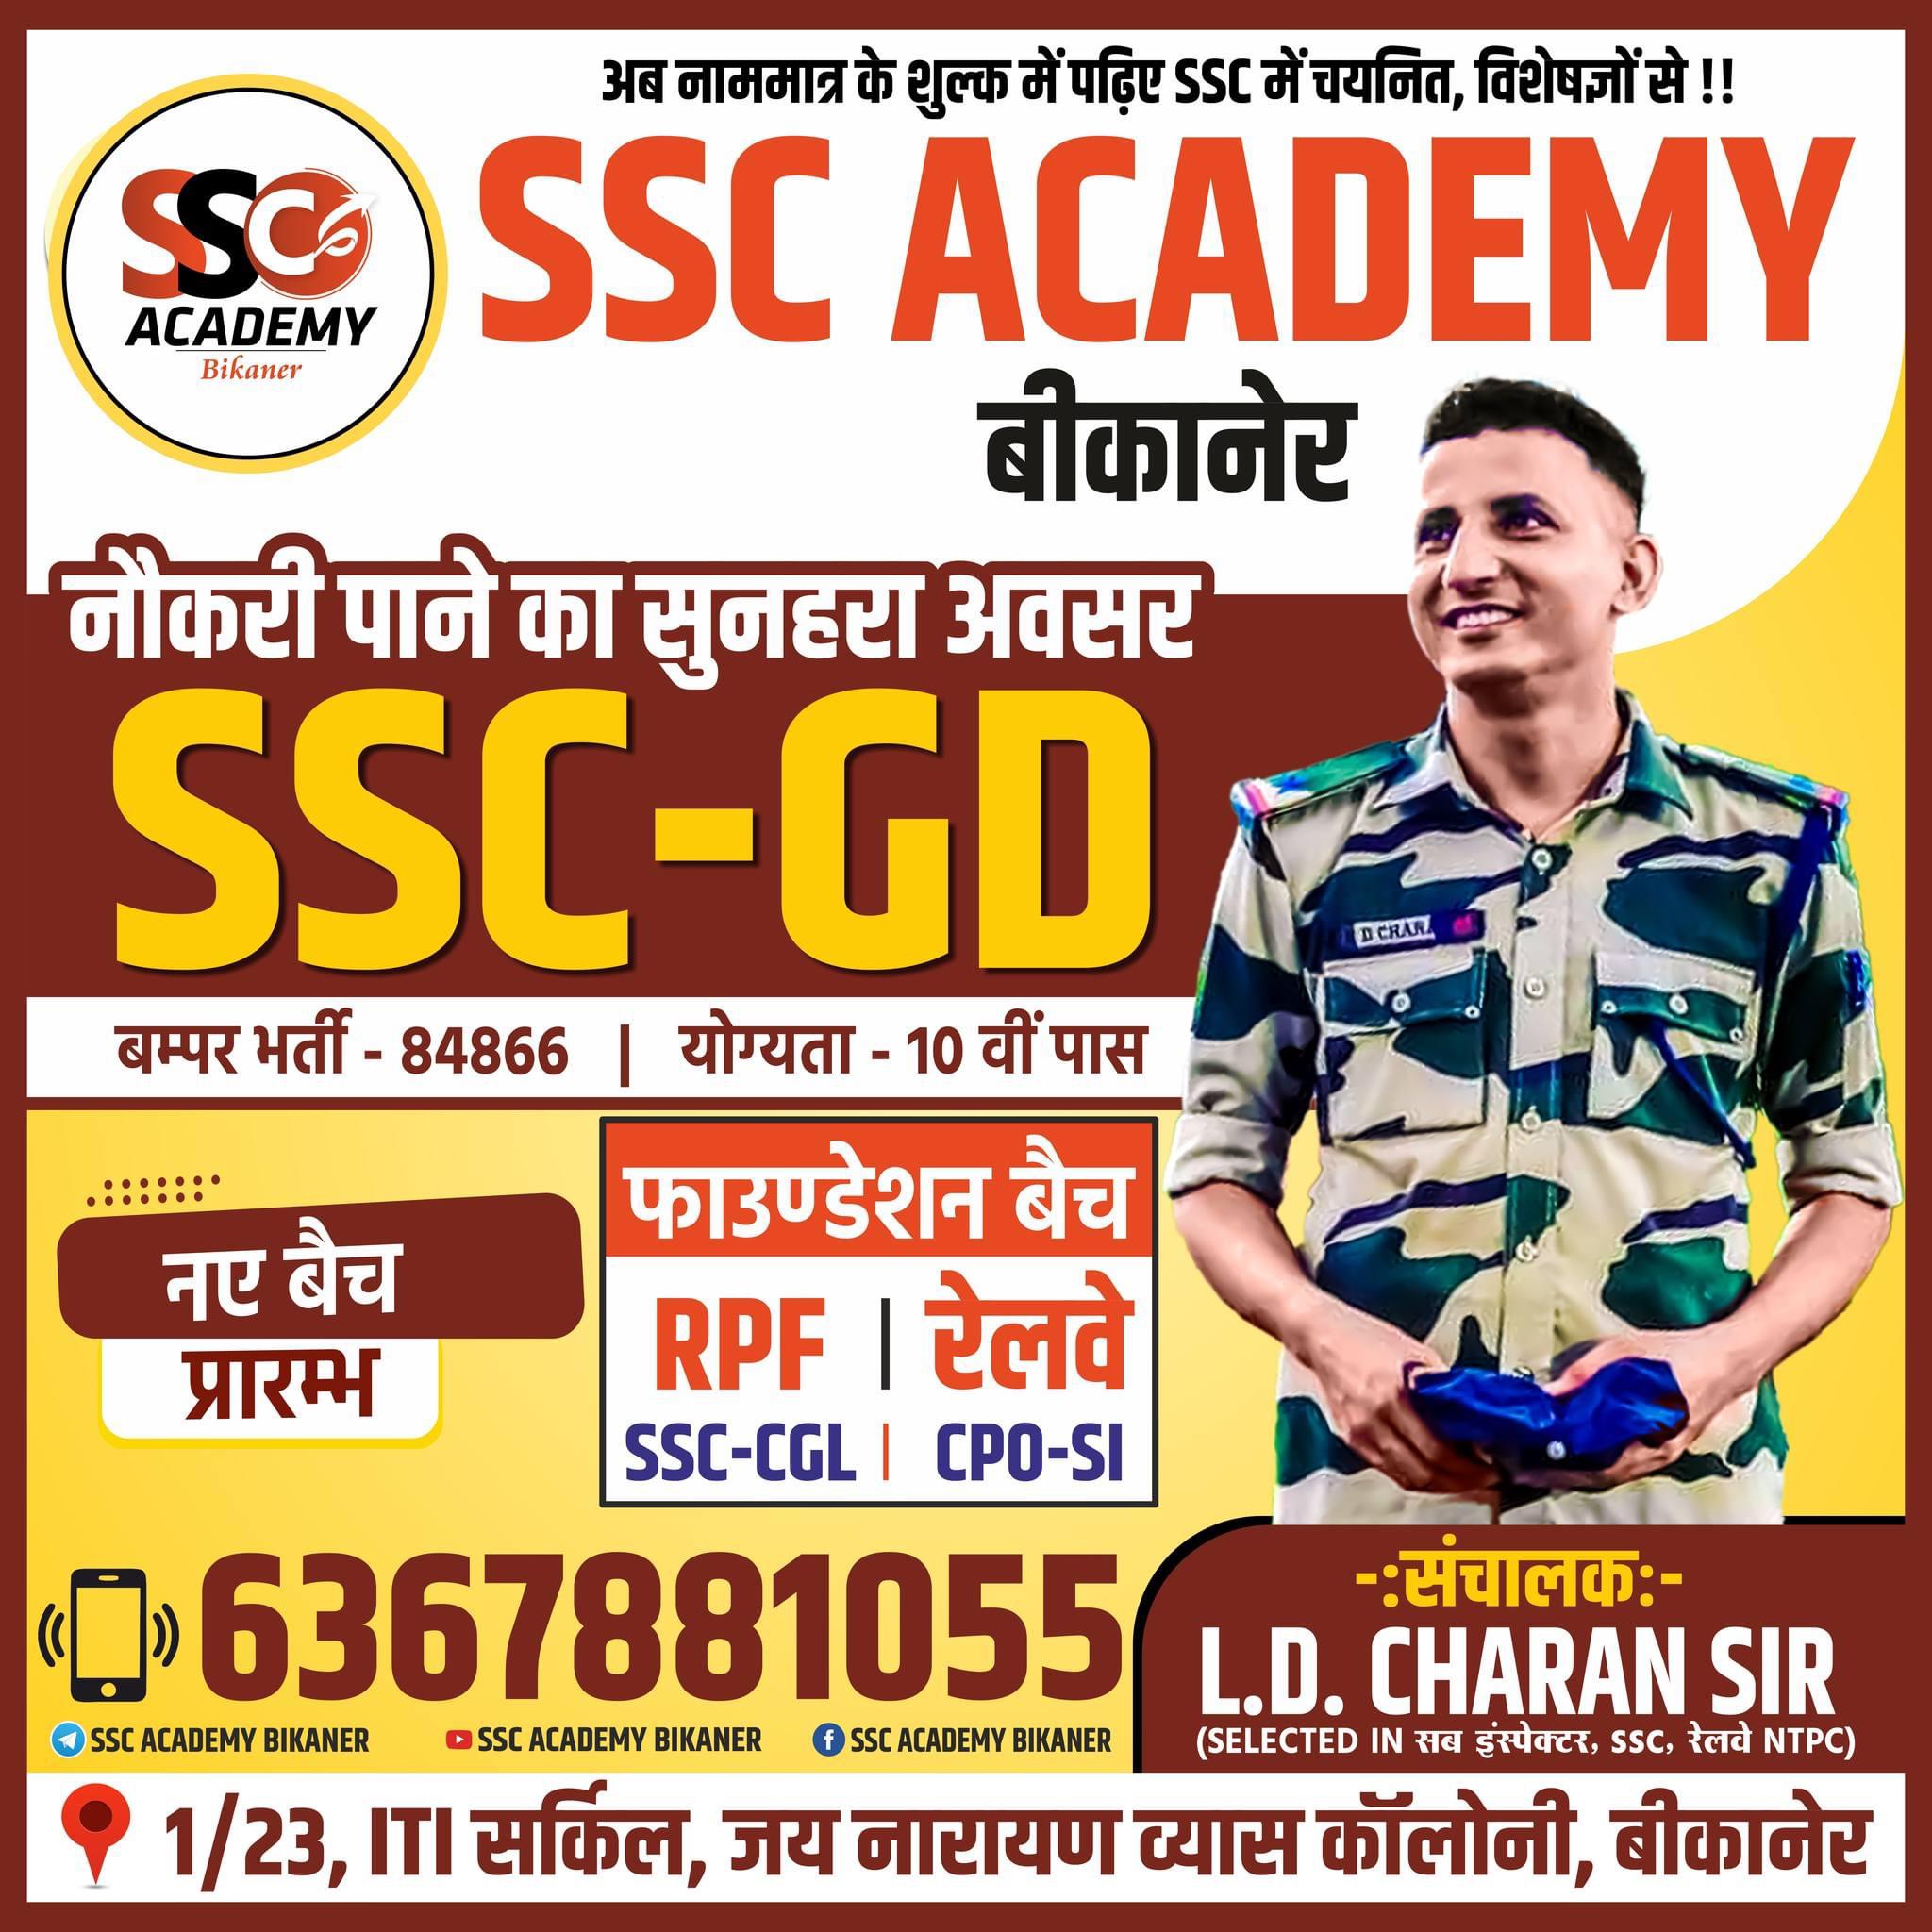 SSC Academy Bikaner